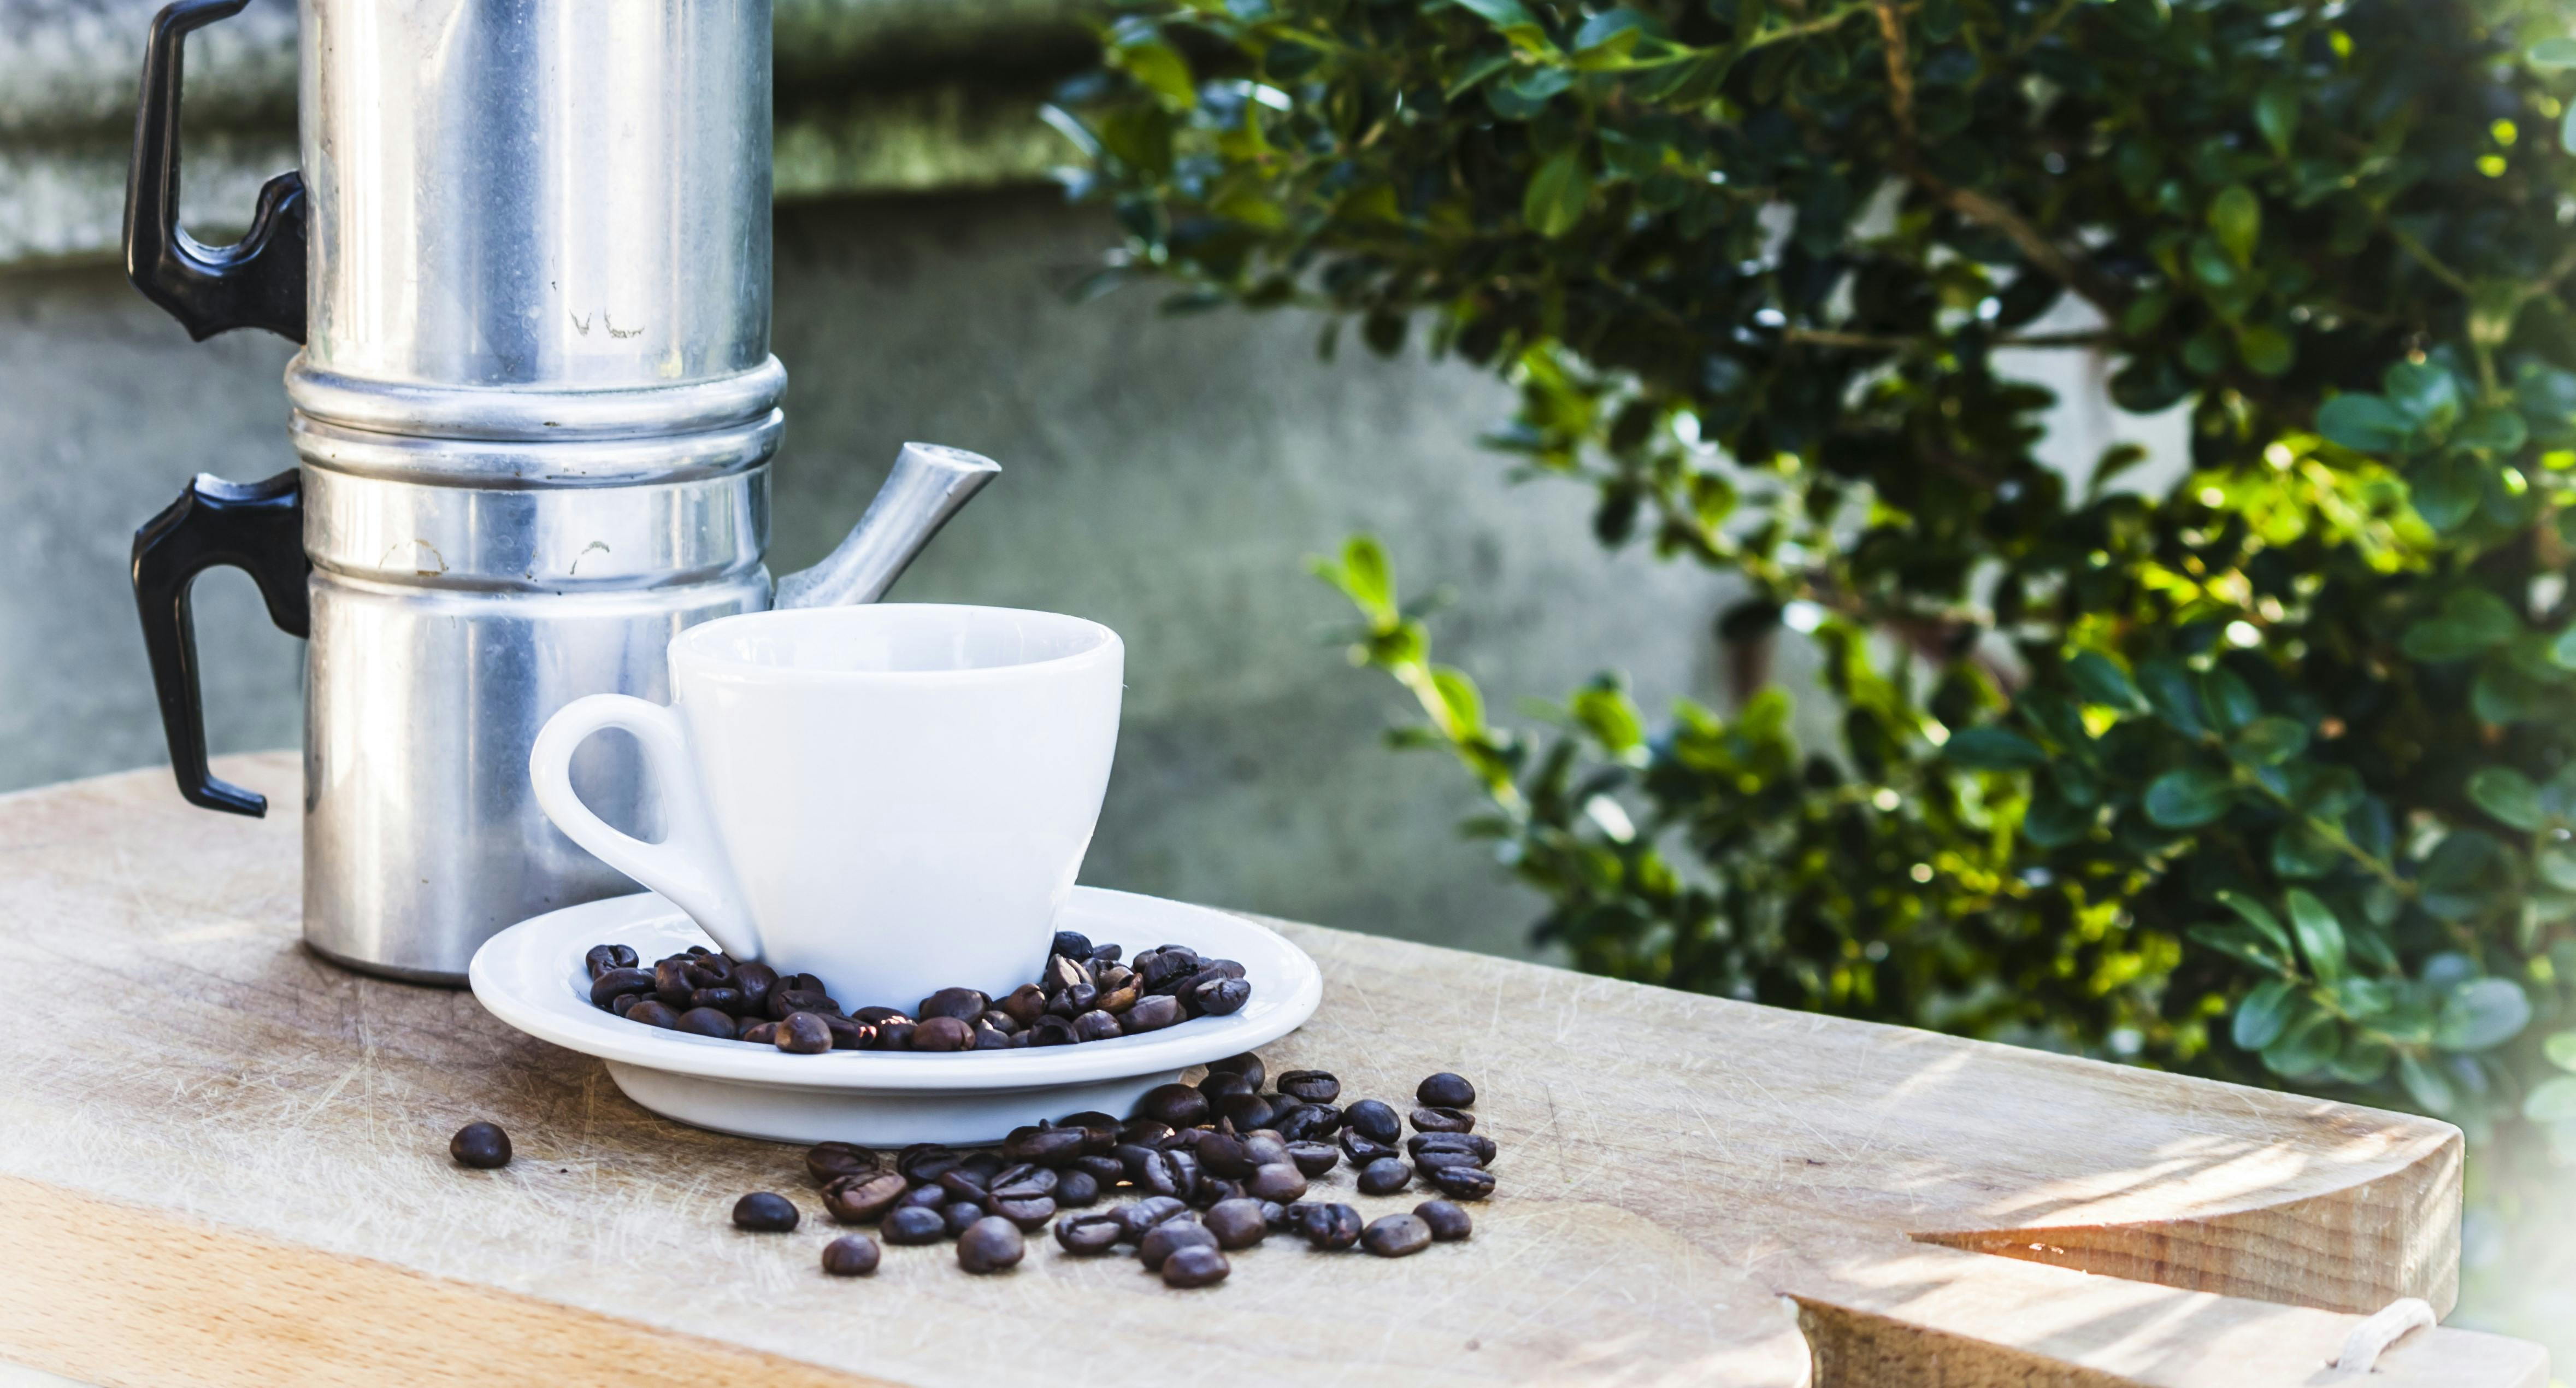 Exploring the cuccuma: A traditional Neapolitan coffee pot